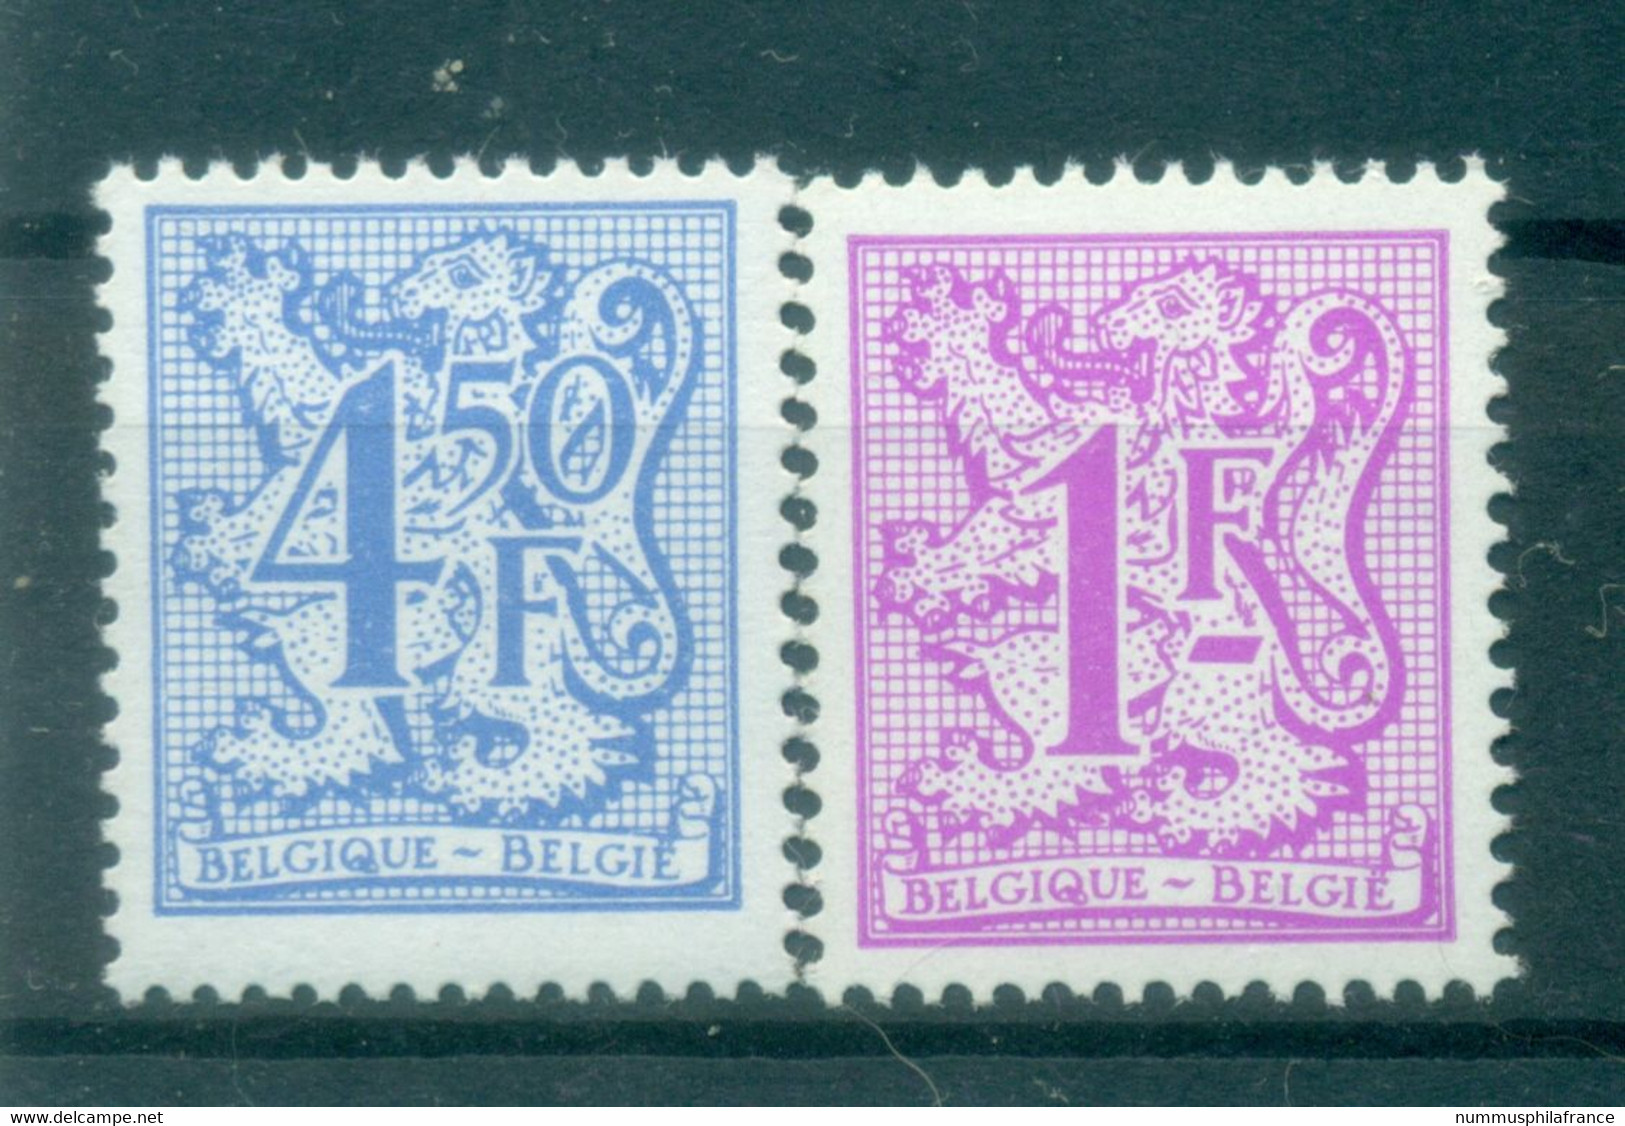 Belgique 1977 - Y & T N. 1844/45 - Série Courante (Michel N. 1891-1902 X) - 1977-1985 Cijfer Op De Leeuw